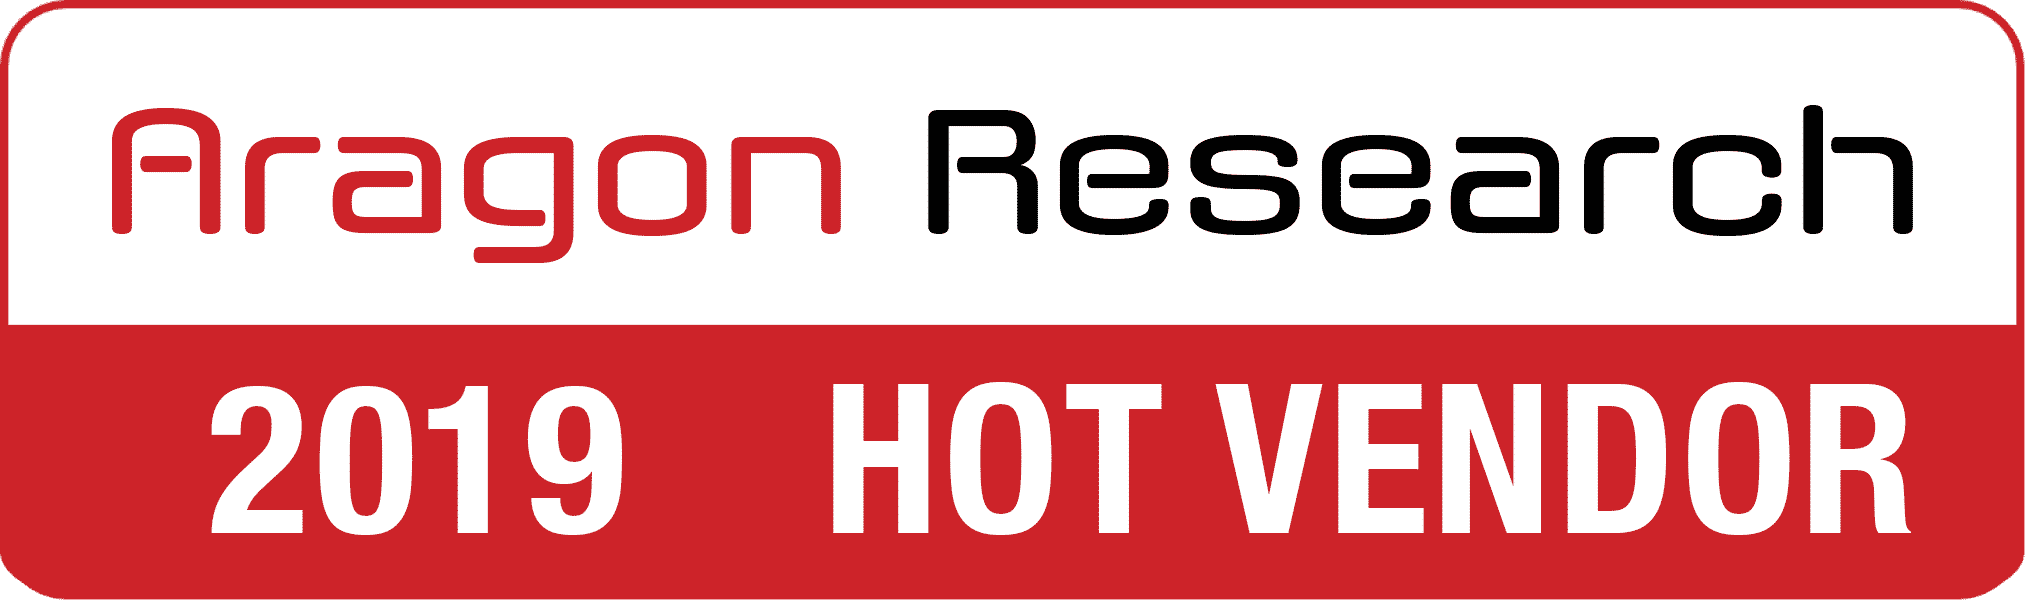 Aragon Research Hot Vendors for 2019 #HotVendor19